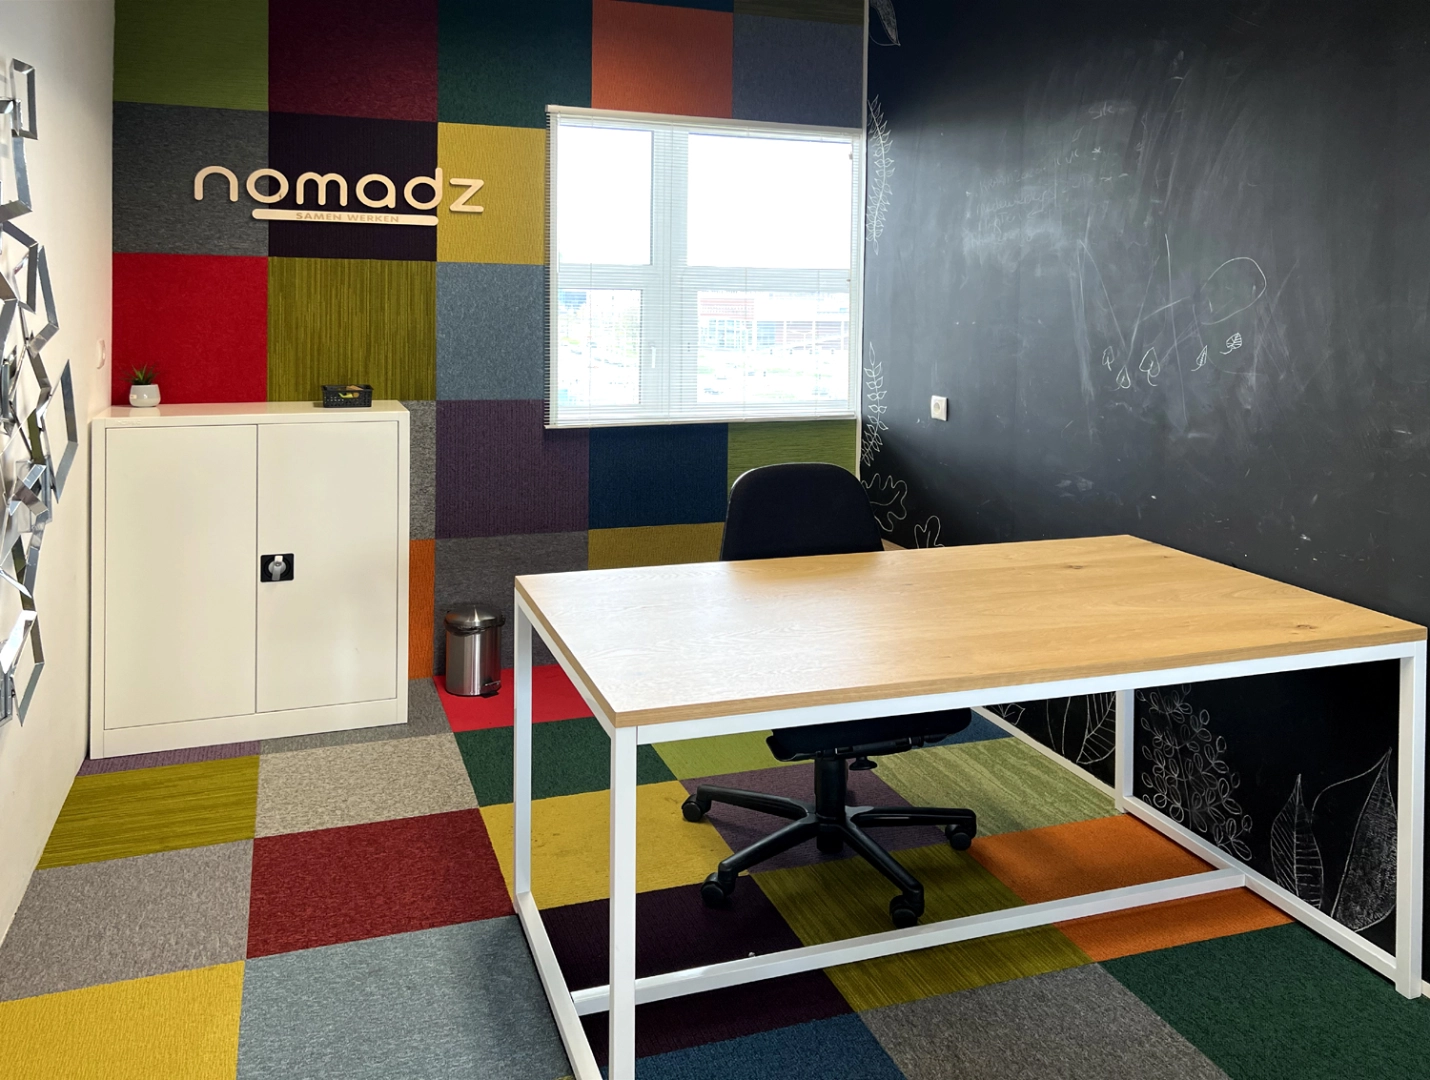 kantoor-nomadz.jpg